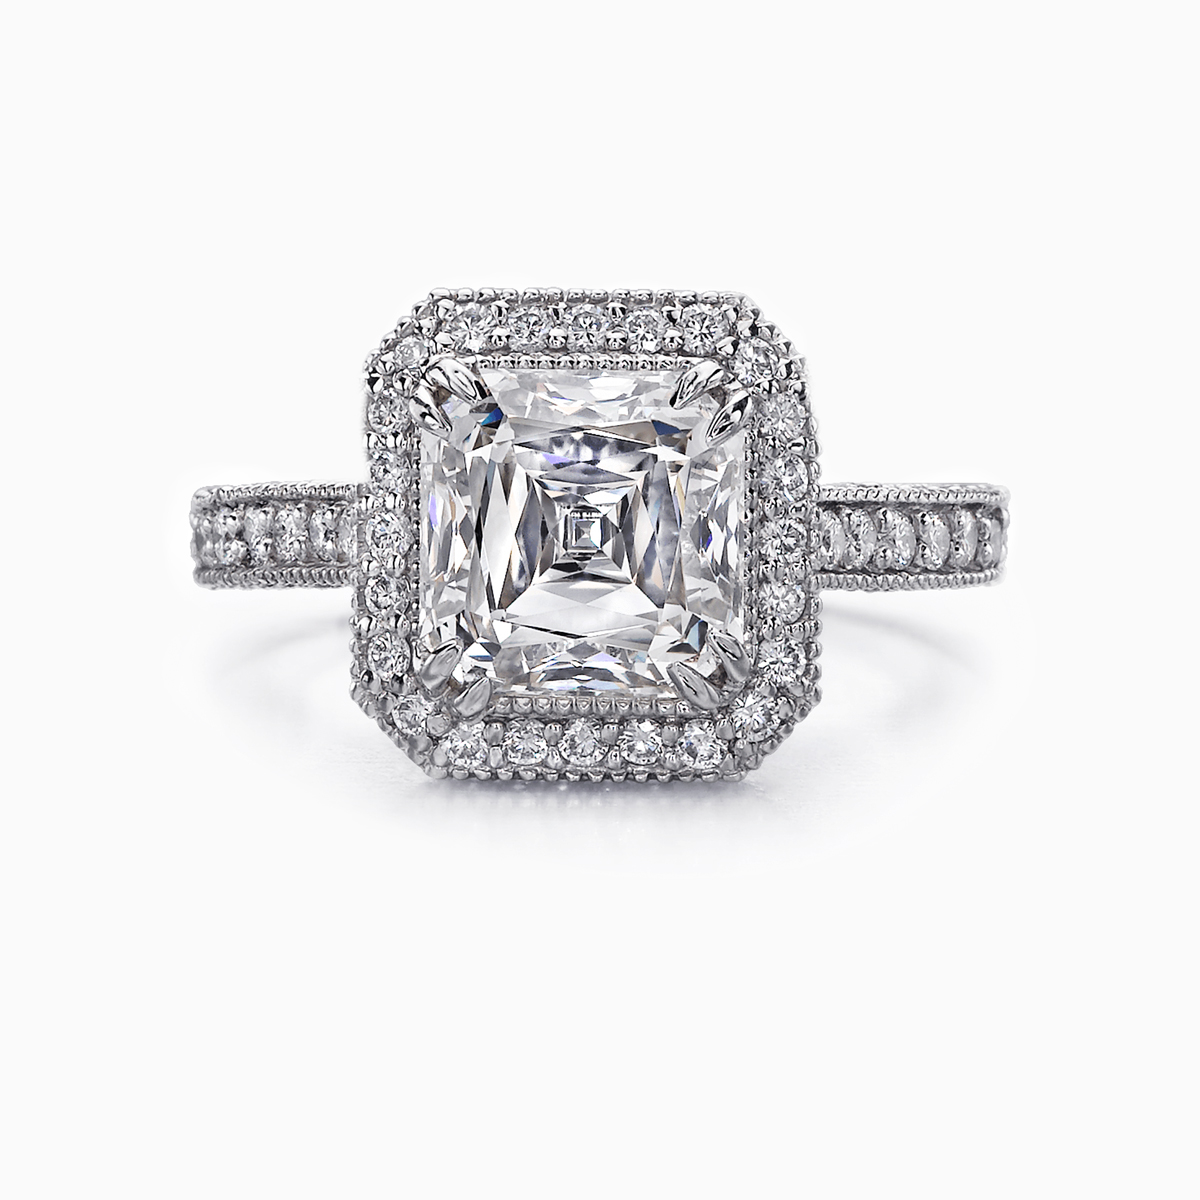 Christopher Designs Asscher Cut Diamond Engagement Ring